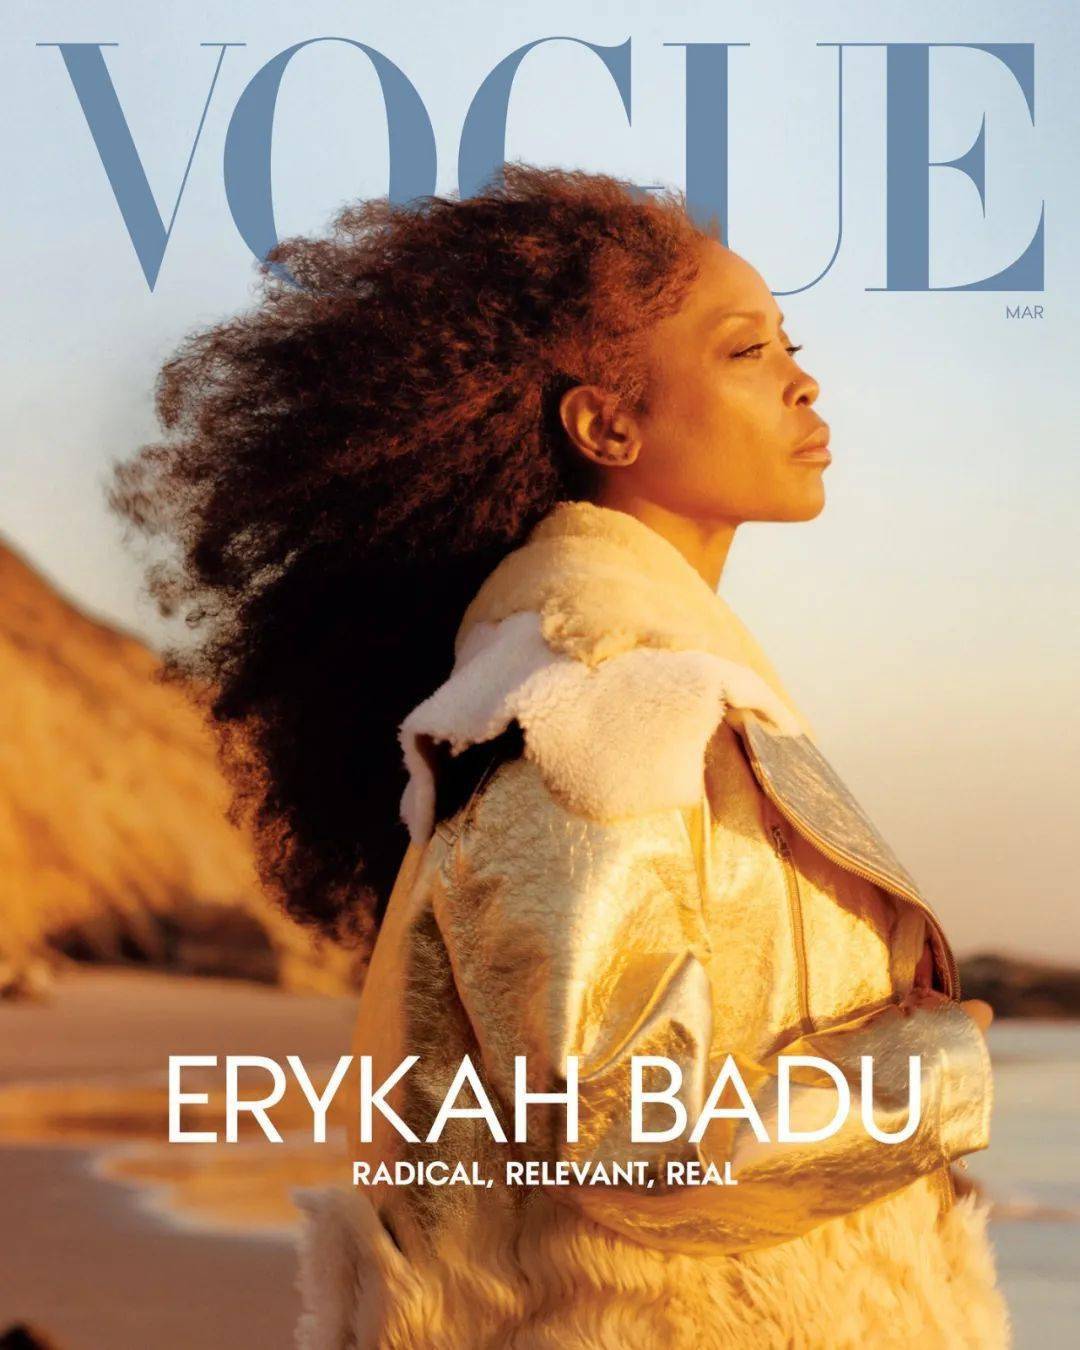 街头歌手小苹果儿童版歌曲:经典灵魂歌手 Erykah Badu 登上《VOGUE》封面！